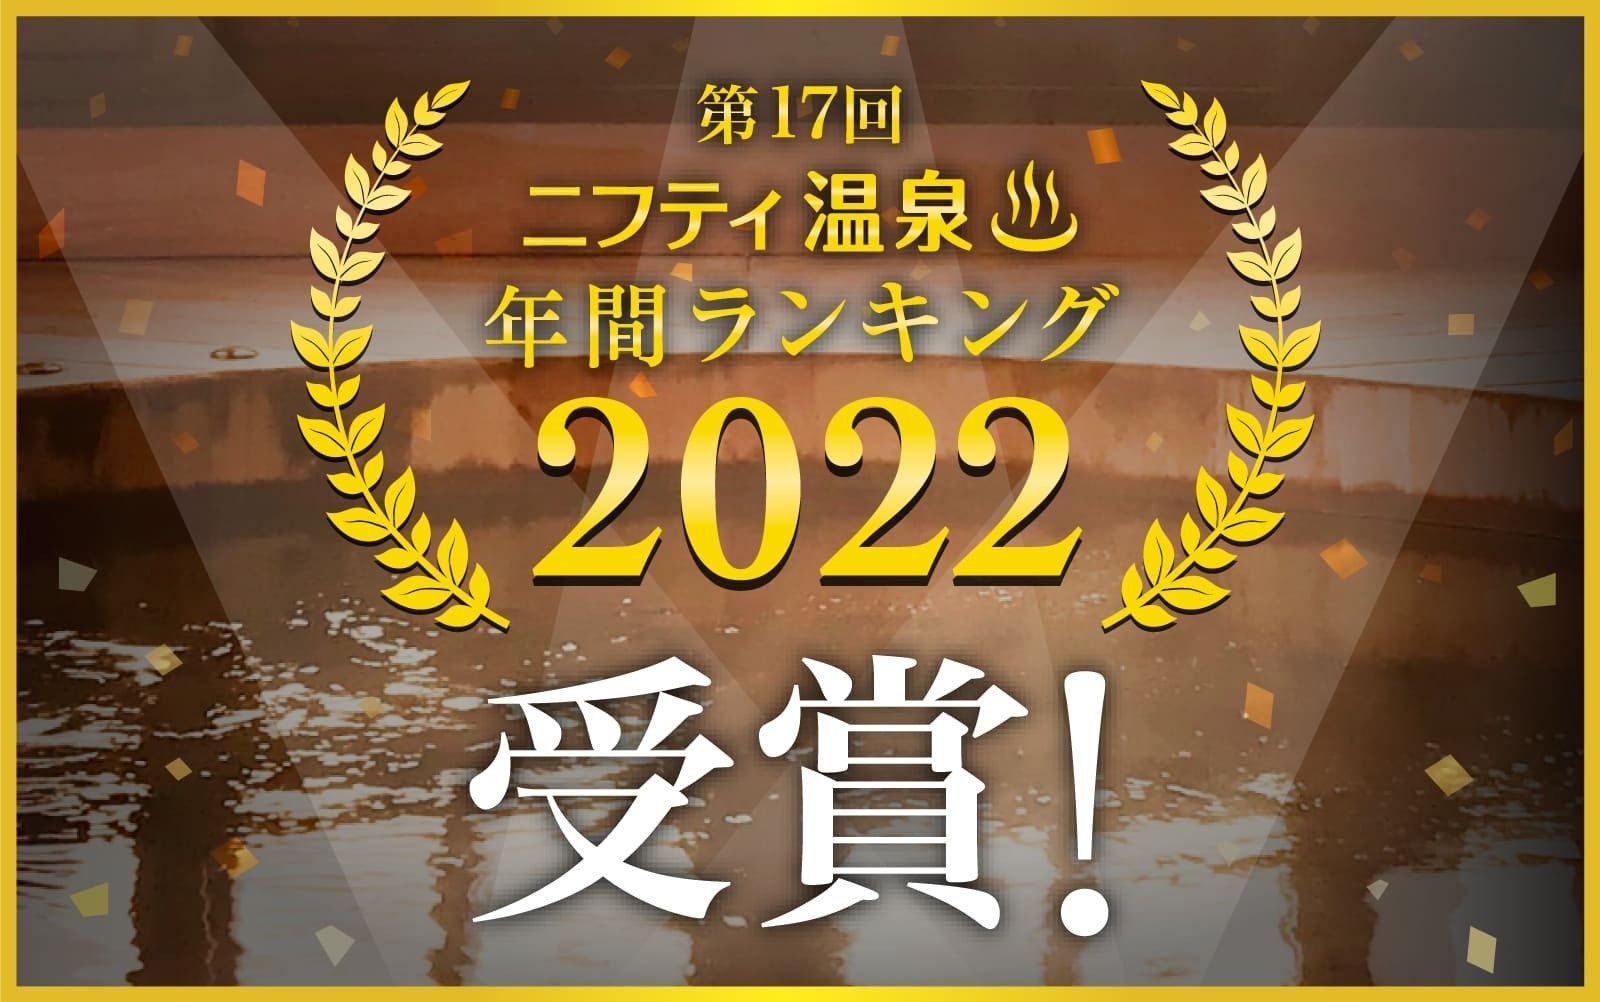 天然温泉平和島は「ニフティ温泉 年間ランキング2022 」において、「充実した施設部門」の東京エリア第1位を受賞しました。